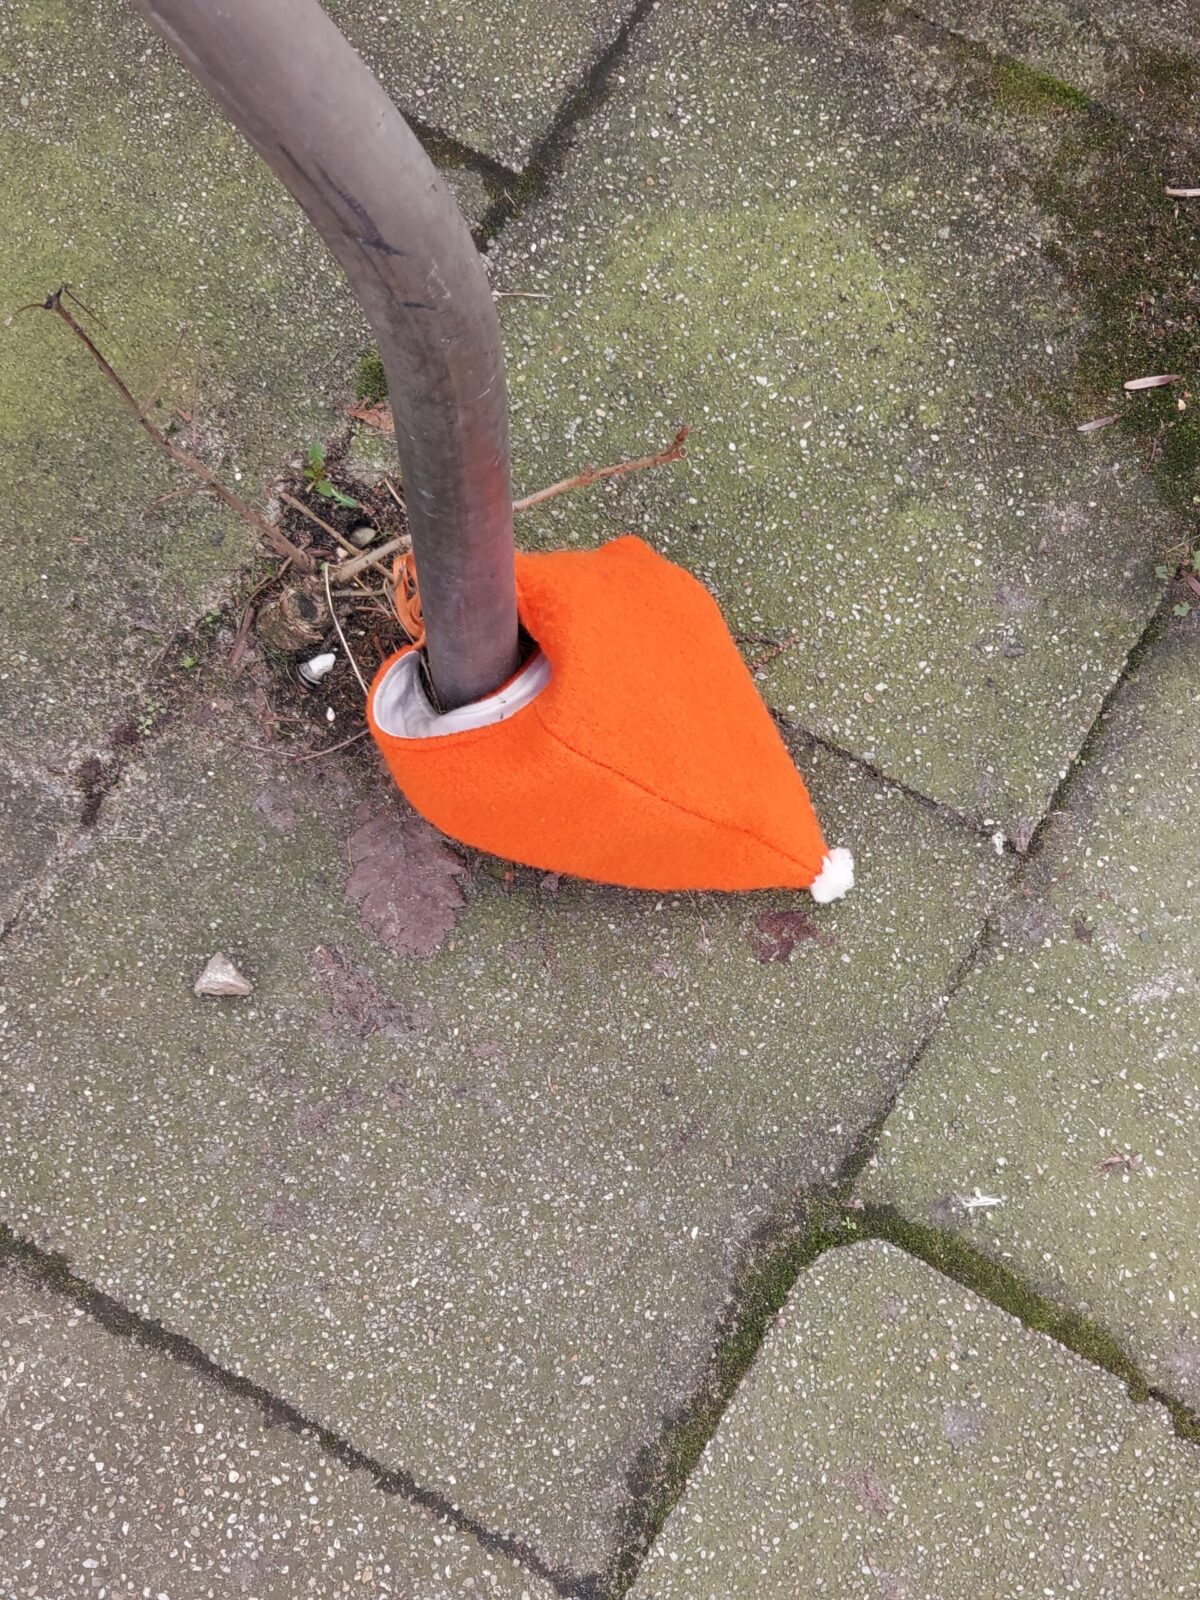 Beispiel-Foto zum Thema Add-one und Add-on. Eine Kindermütze in leuchtendem Orange liegt am Boden und wurde dort  an einem Fahrradständer angebunden. Die Mütze hat einen kleinen weißen Bommel.